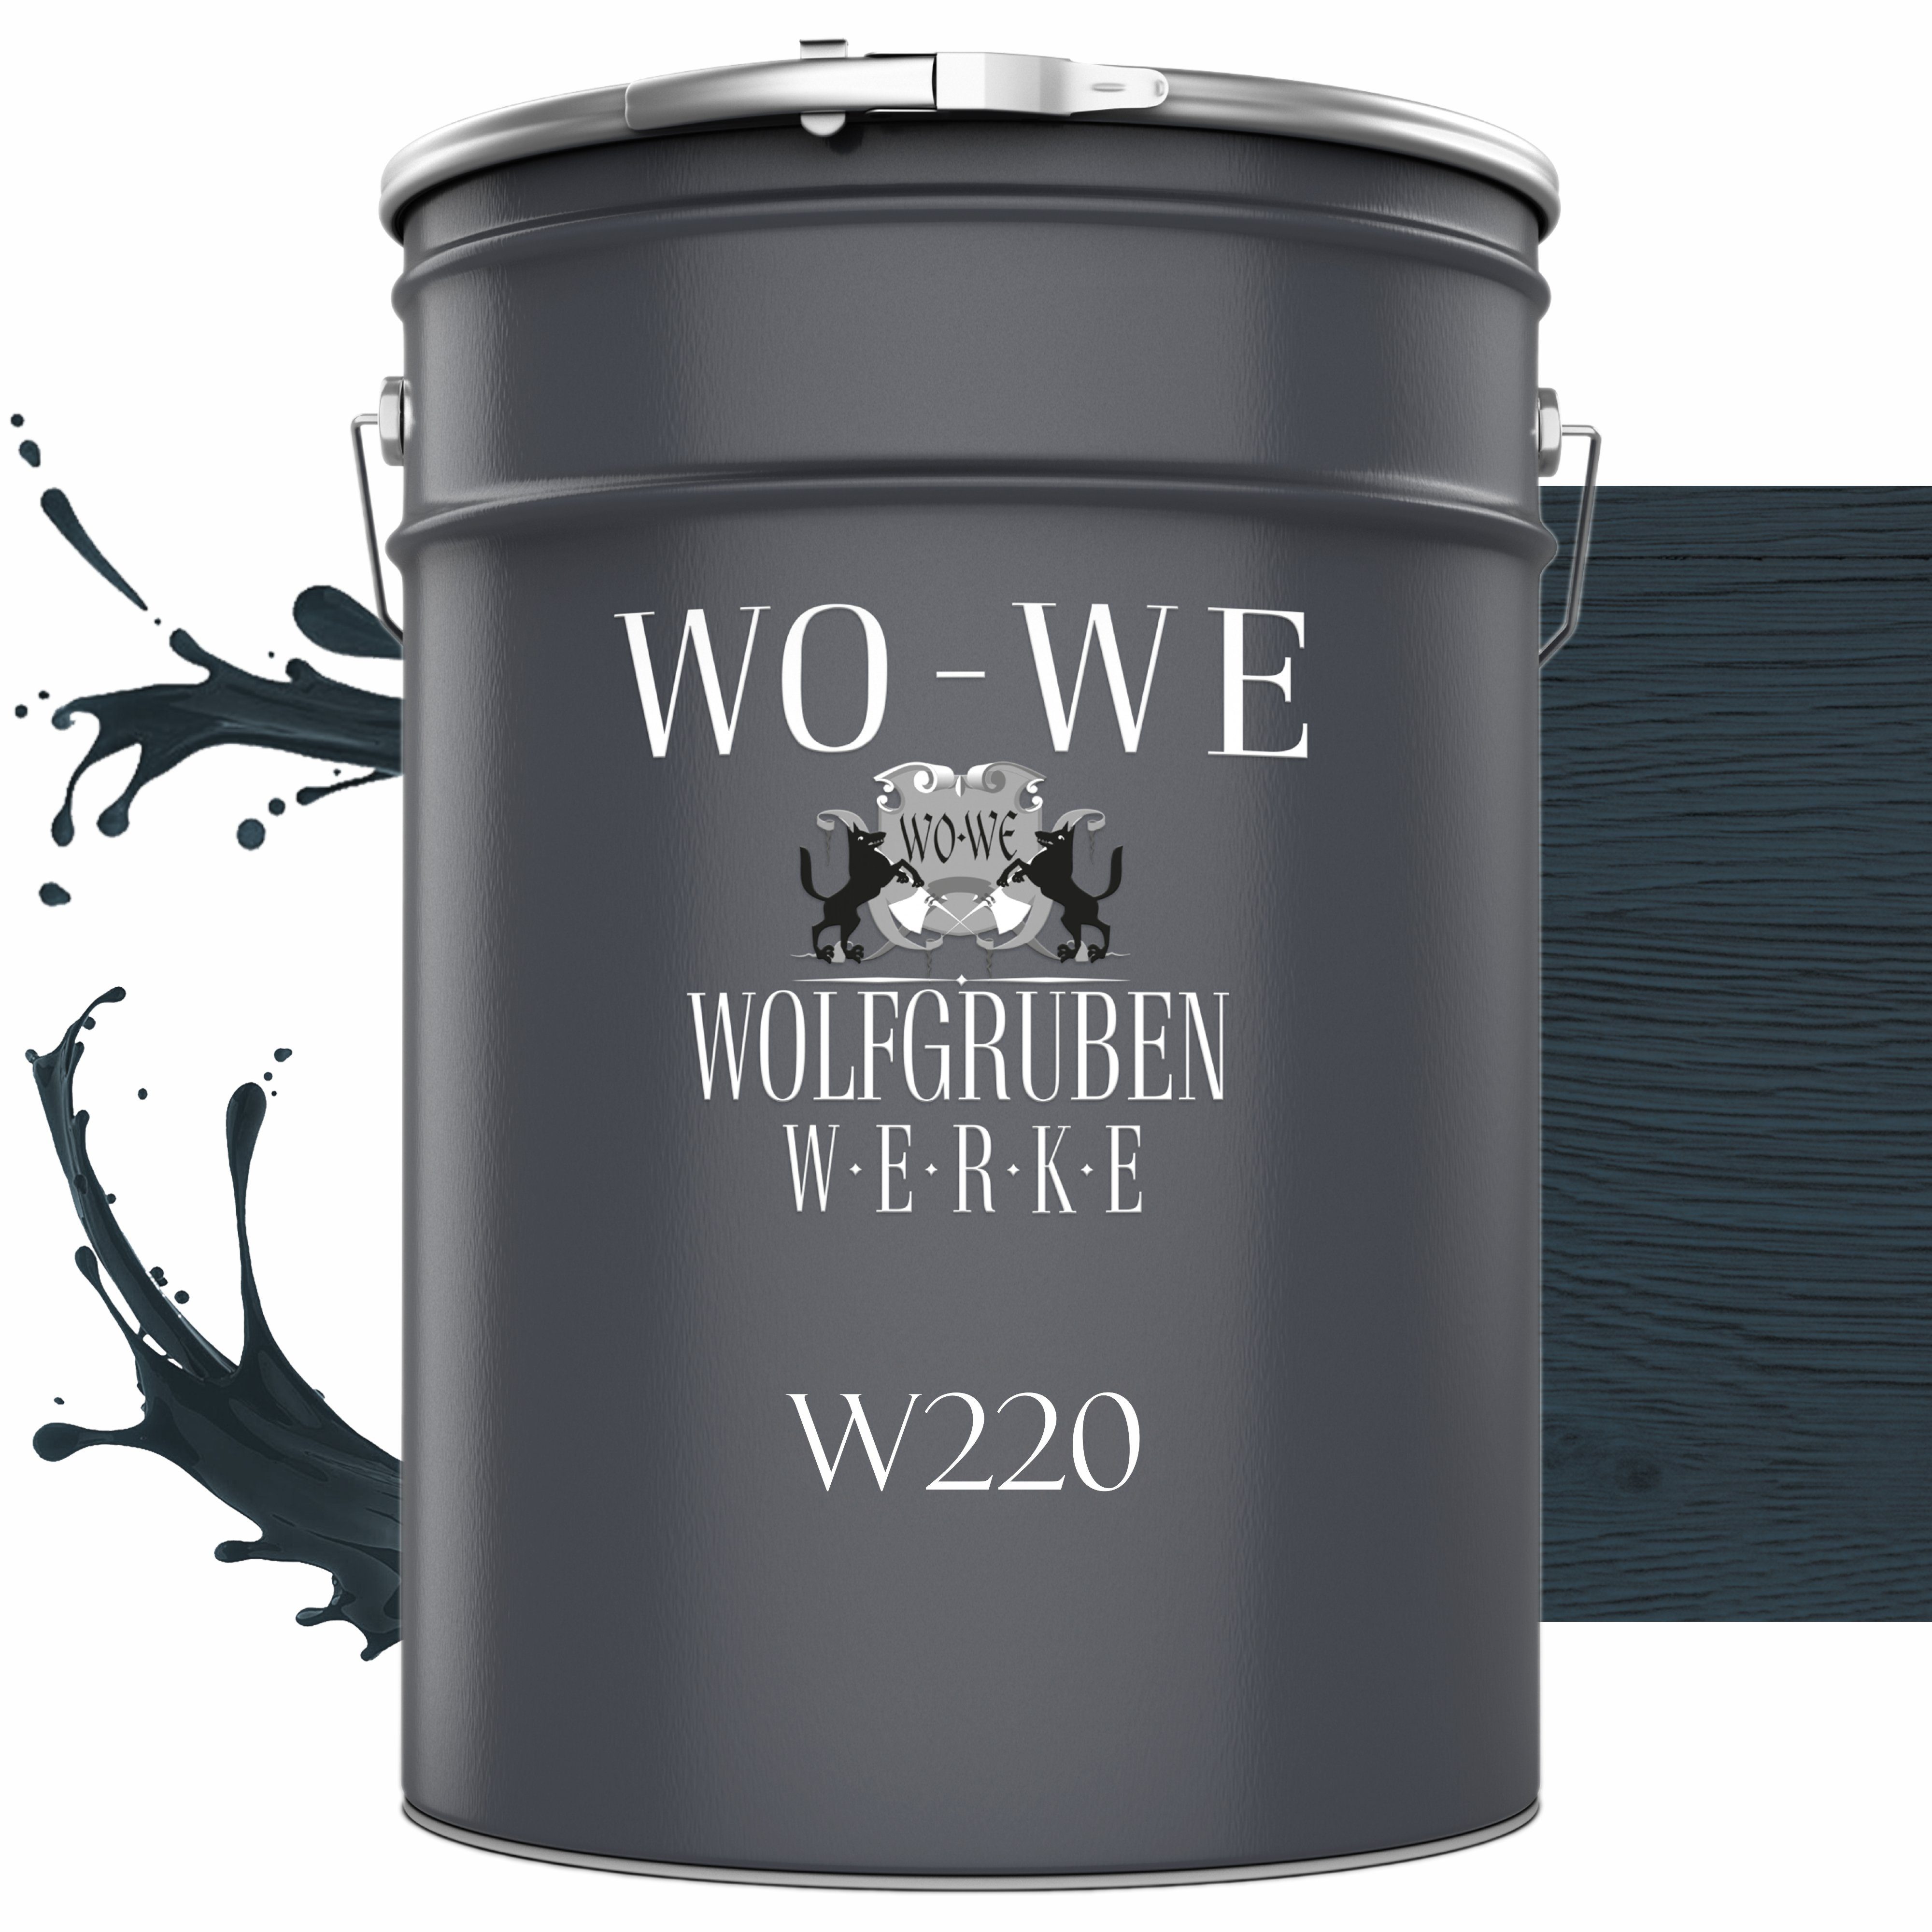 WO-WE Dickschichtlasur Holzschutzlasur 2in1 Holzlasur W220, 1-2,5L, Lösemittelfrei, UV-stabil Anthrazitgrau